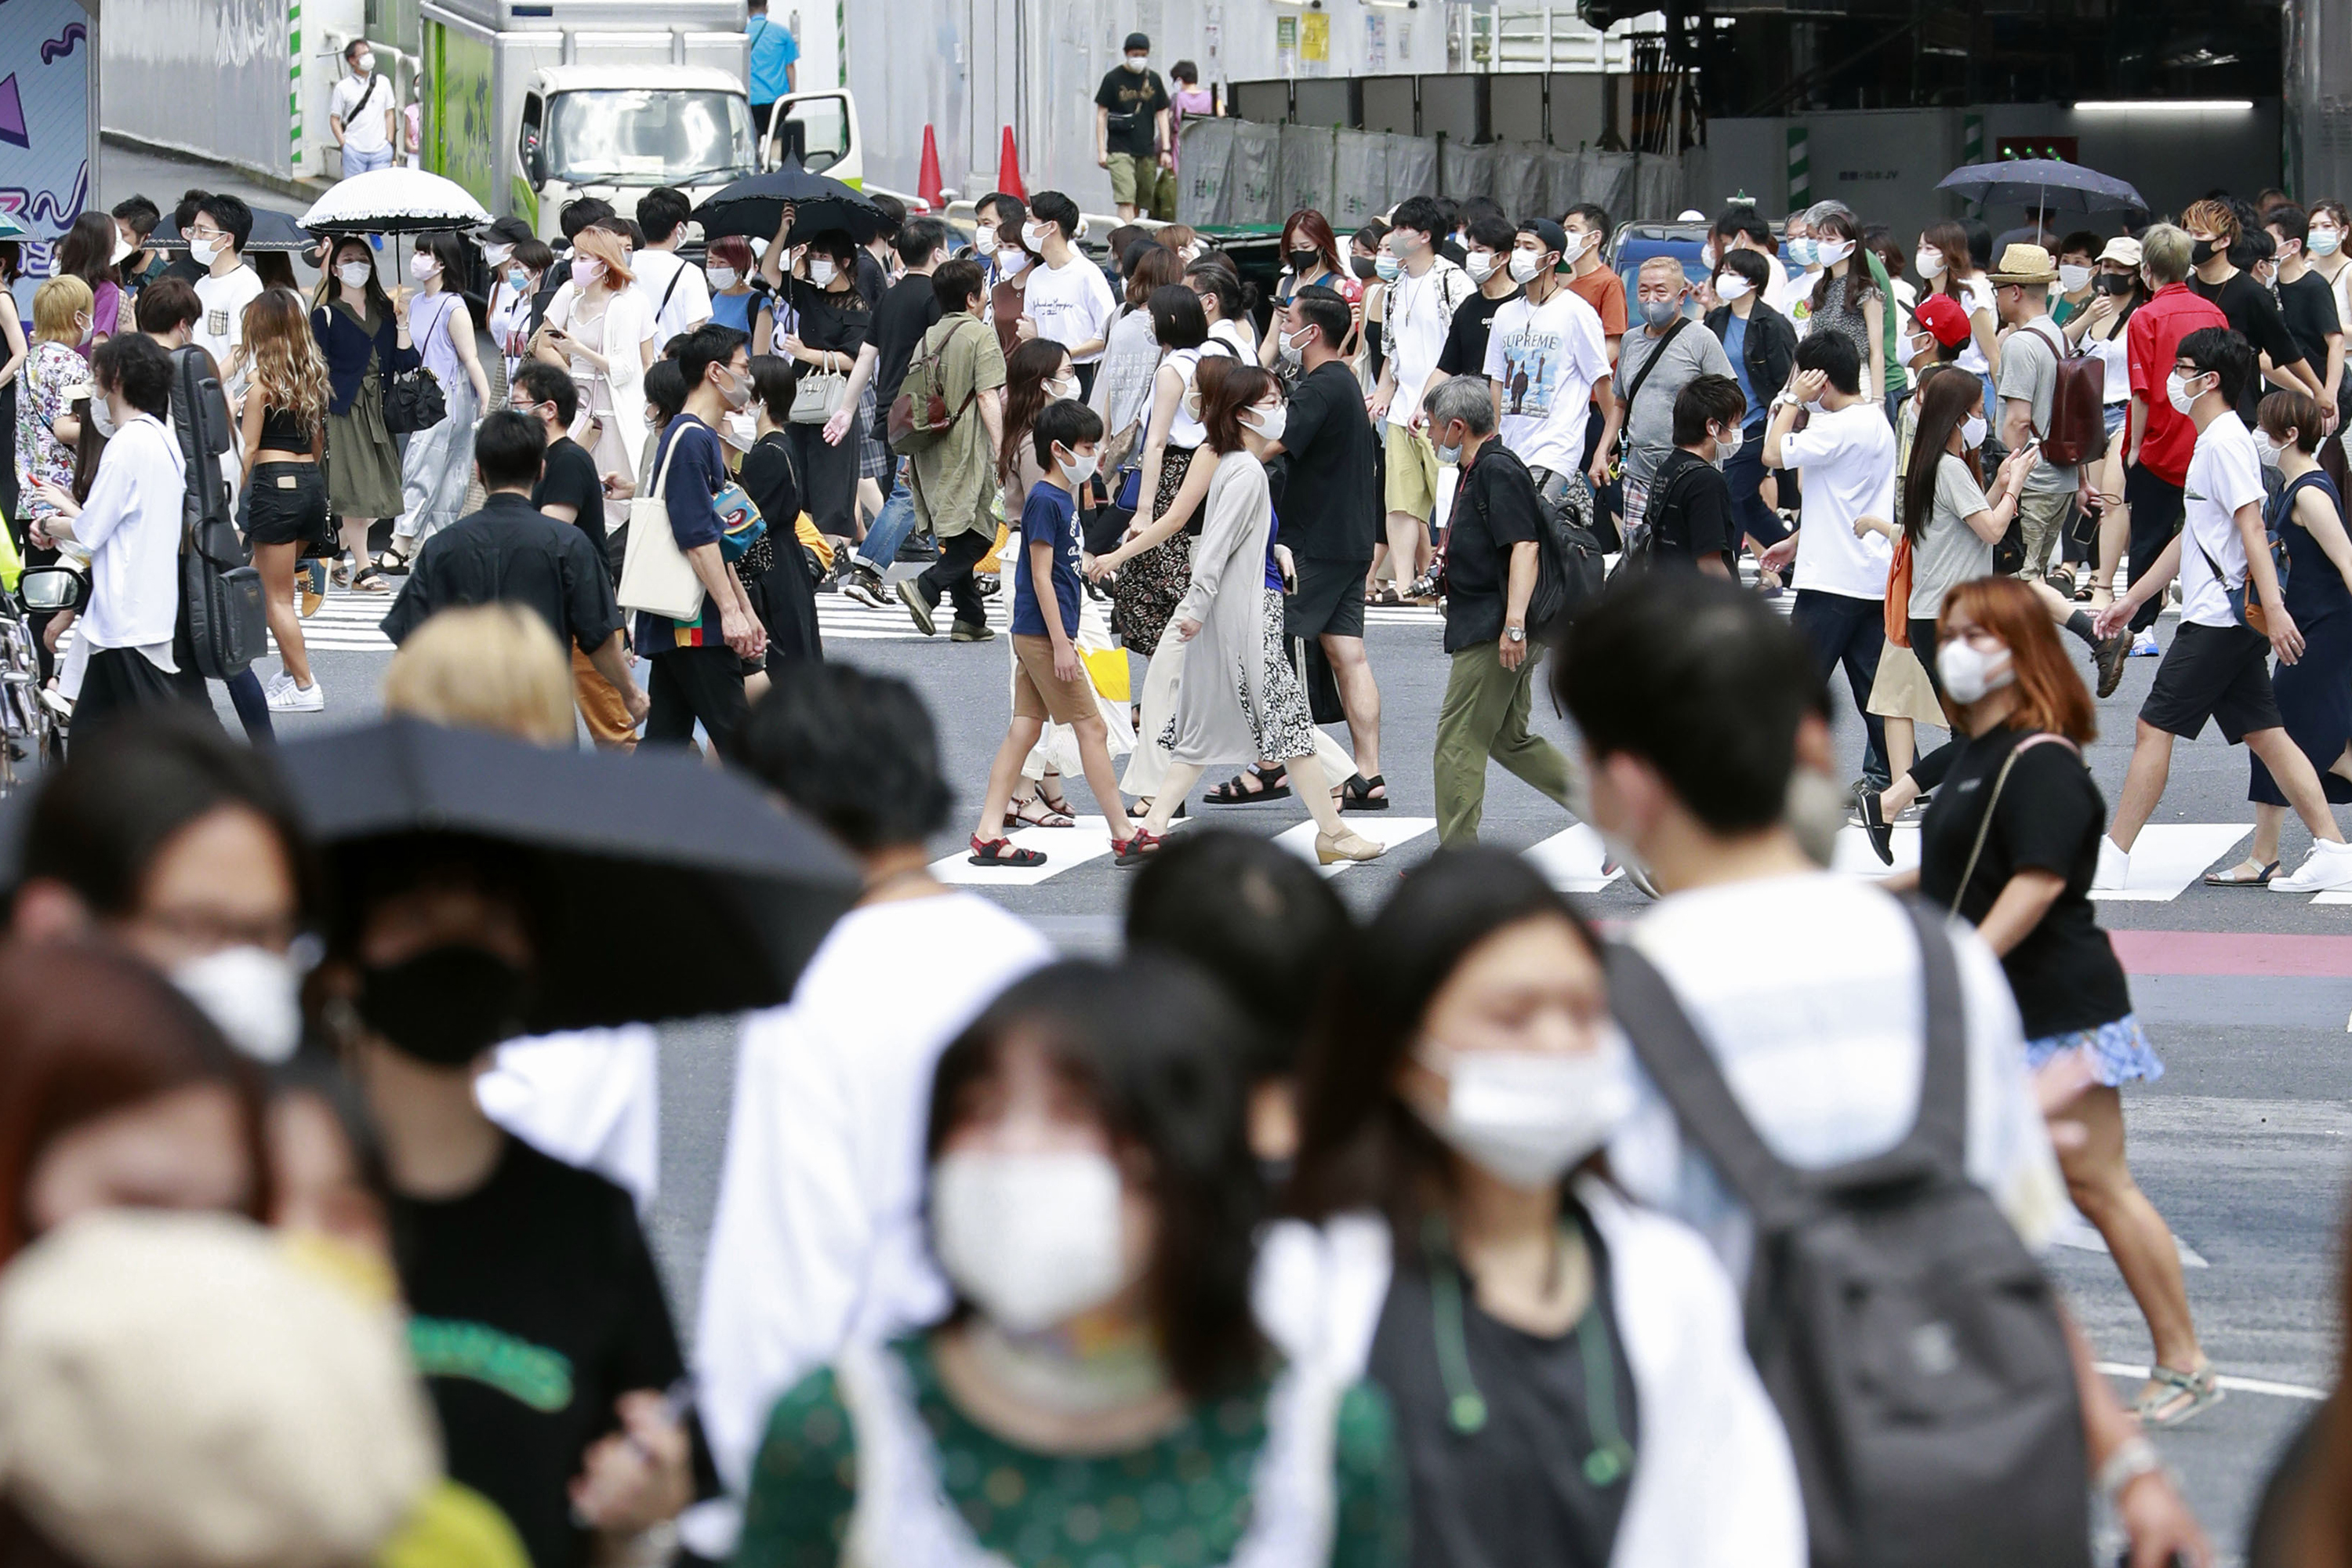 신종 코로나바이러스 감염증(코로나19) 예방 마스크를 쓴 사람들이 2일 일본 도쿄의 중심가를 걷고 있다. 일본에서는 코로나19 누적 확진자수가 급증하고 있어 통제가 불가능한 수준까지 치달을 수 있다는 우려가 커지고 있다. 도쿄에서는 이날도 290여명의 신규 확진자가 발생했다. 2020.08.02 AP 연합뉴스